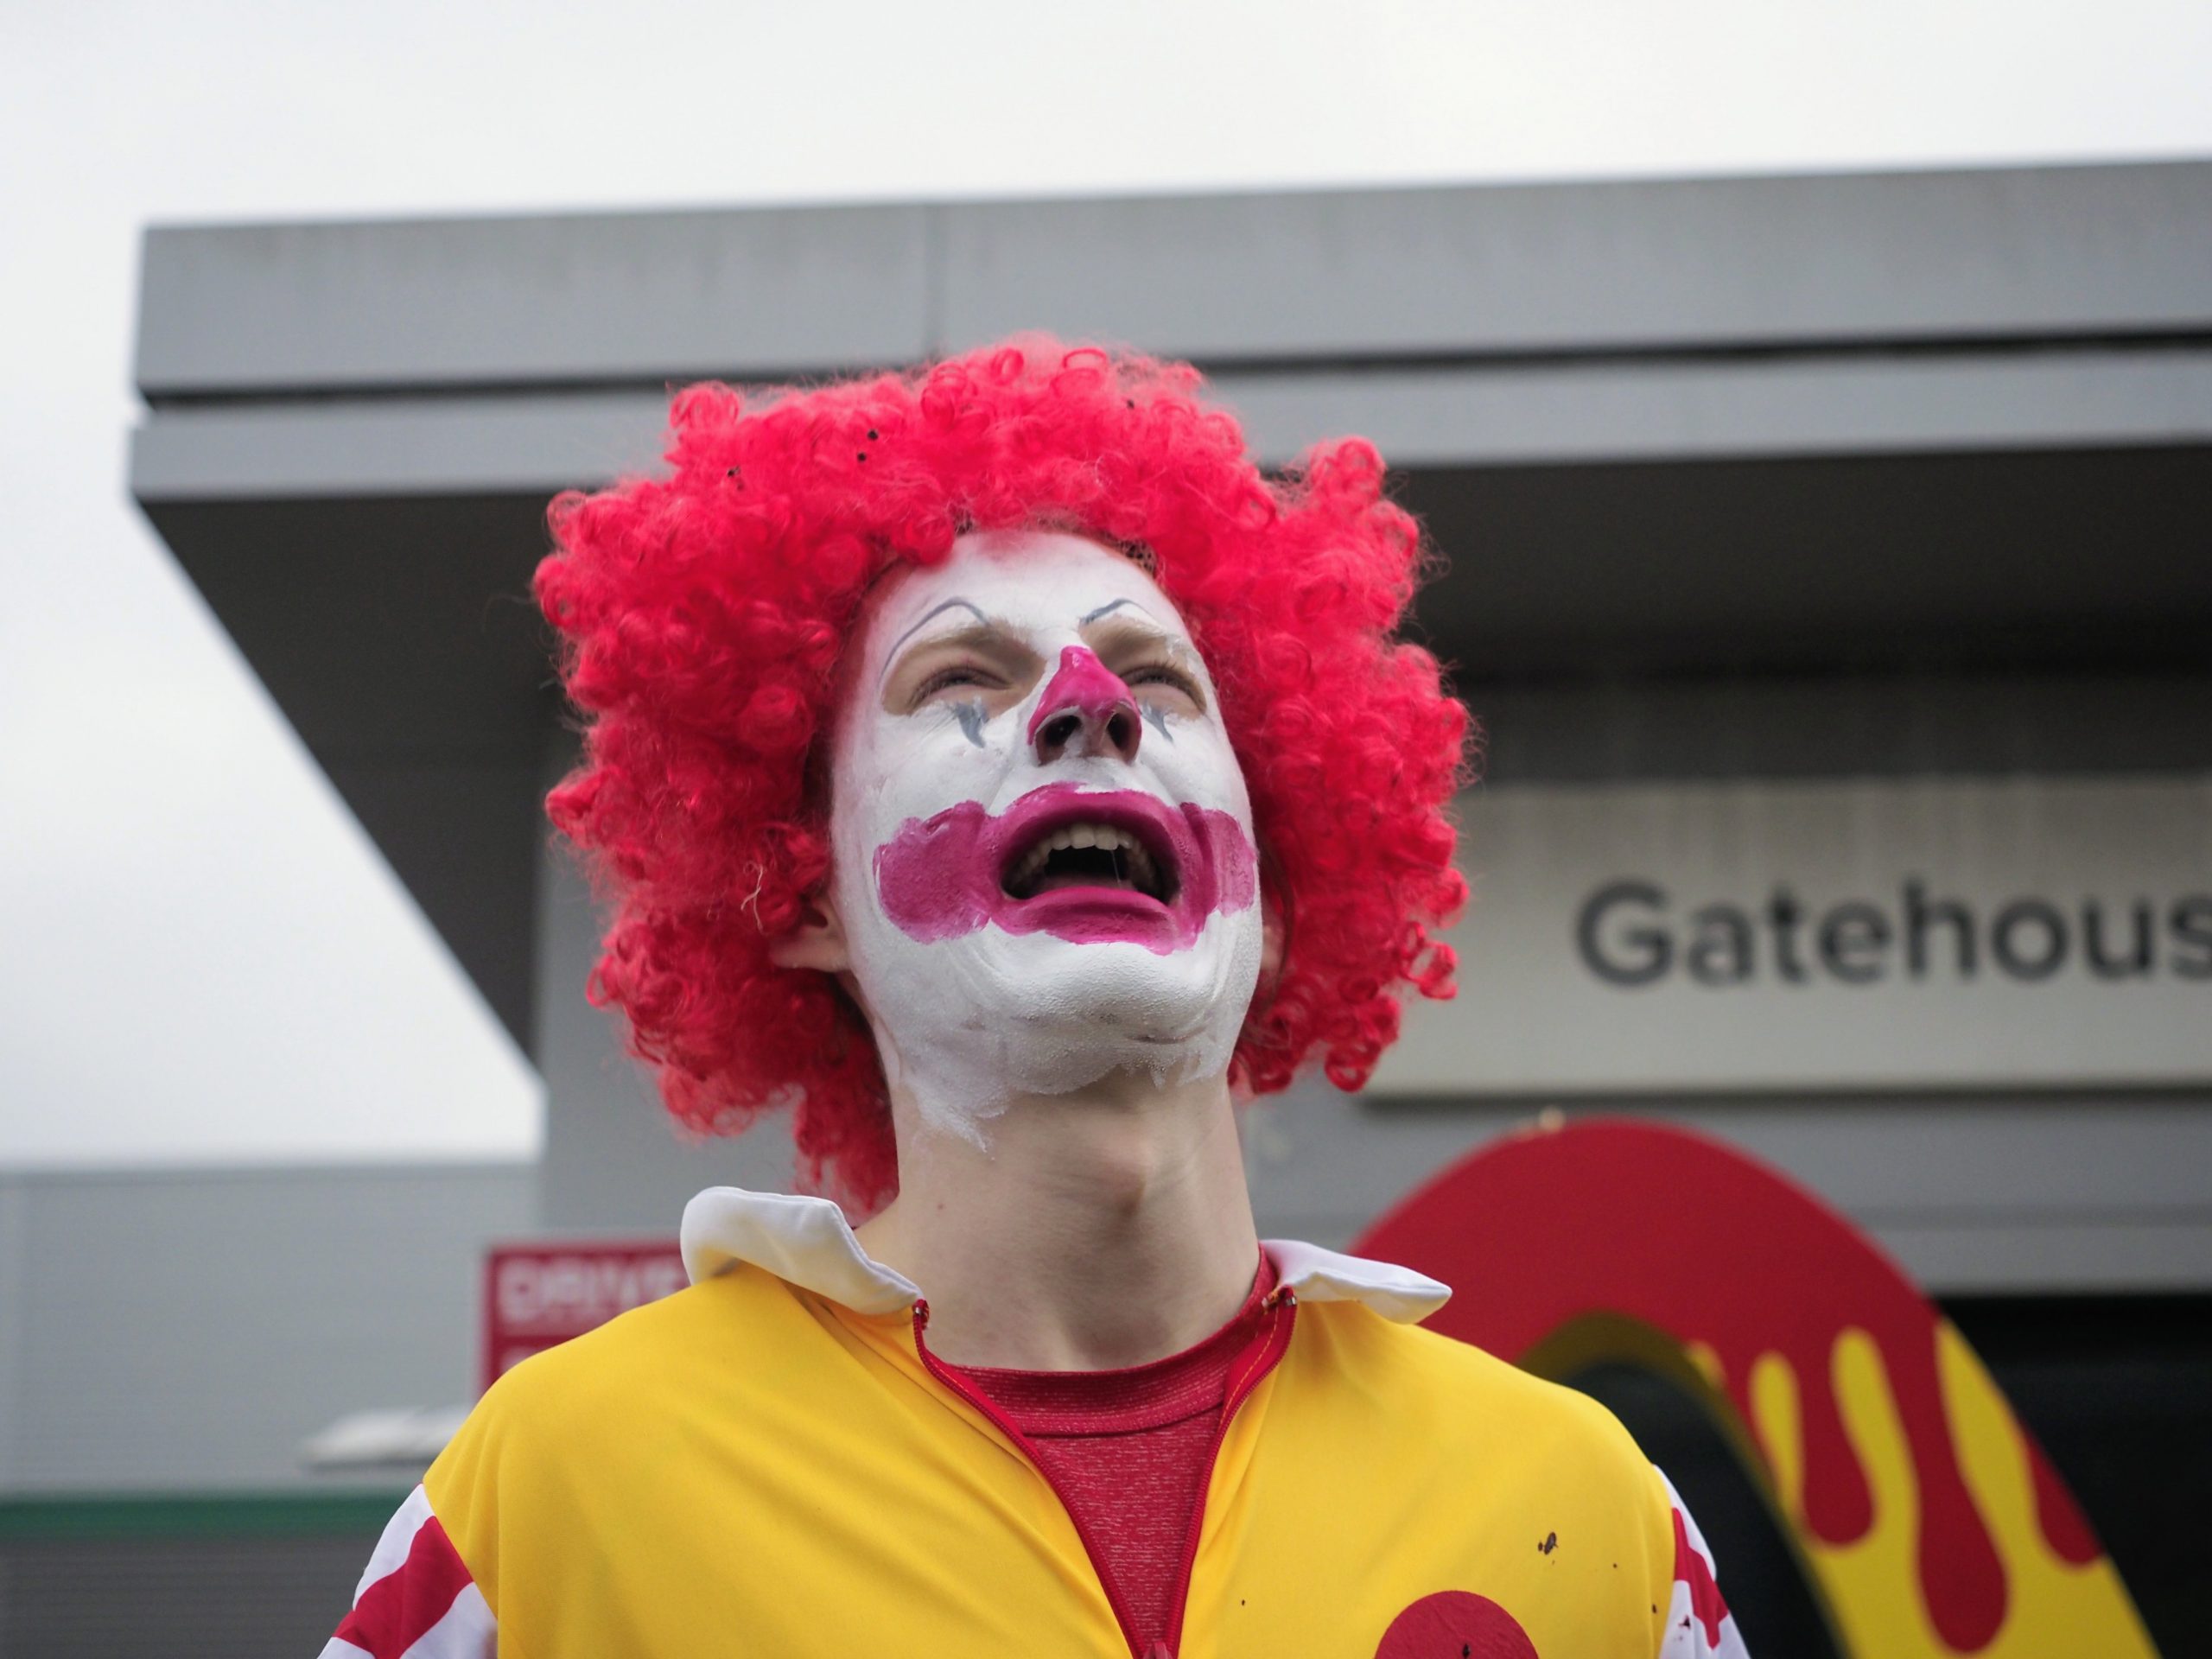 Hayvan hakları savunucuları ülkedeki 1300 McDonald's restoranına ürün dağıtımını engelledi